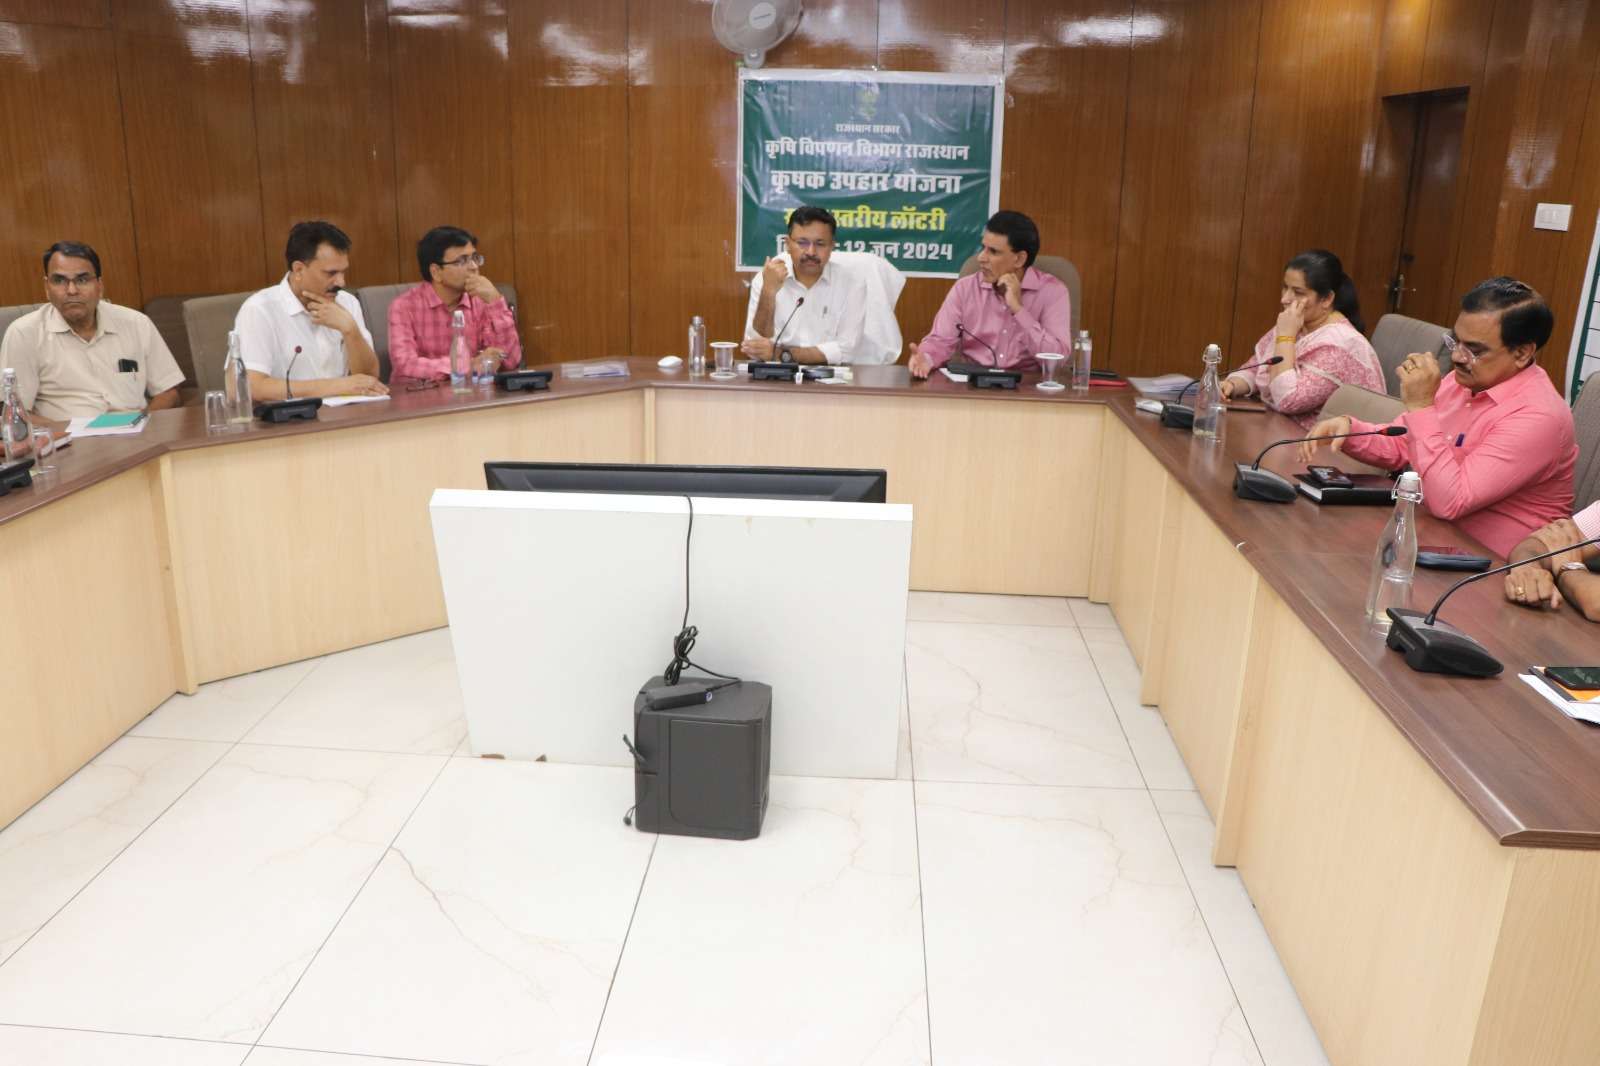 Rajasthan news: कृषक उपहार योजना के तहत राज्य स्तर पर निकाली ऑन-लाइन लॉटरी कोटा के मंजीत पाल को मिला